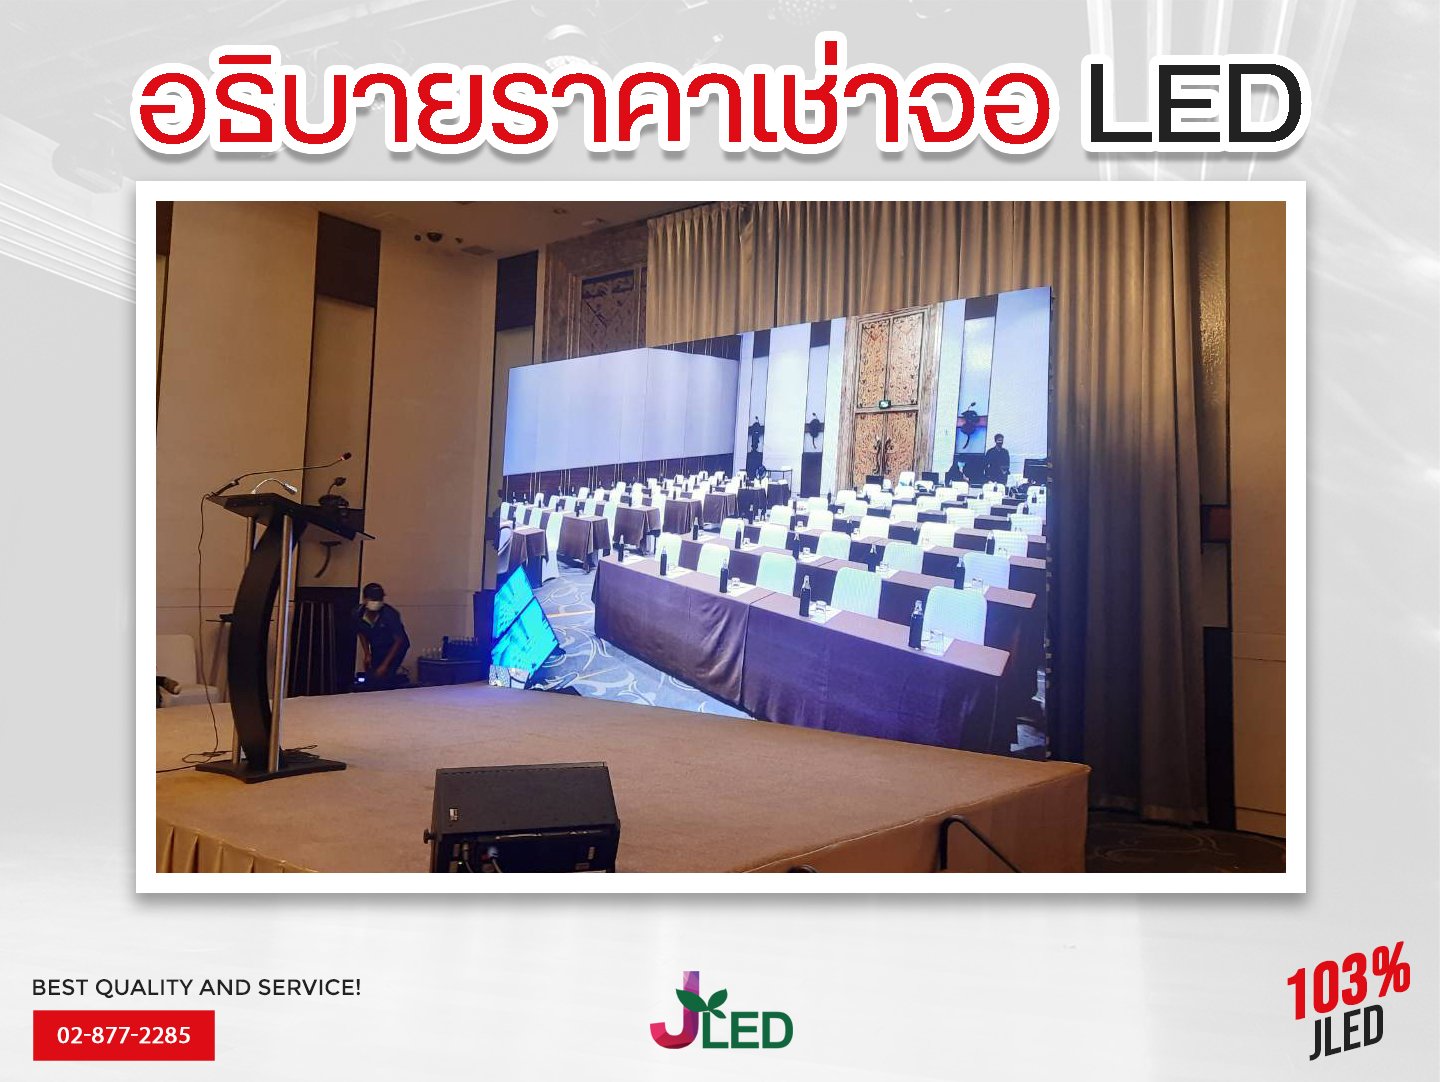 วิธีการเช่าจอ LED JLED screen rental